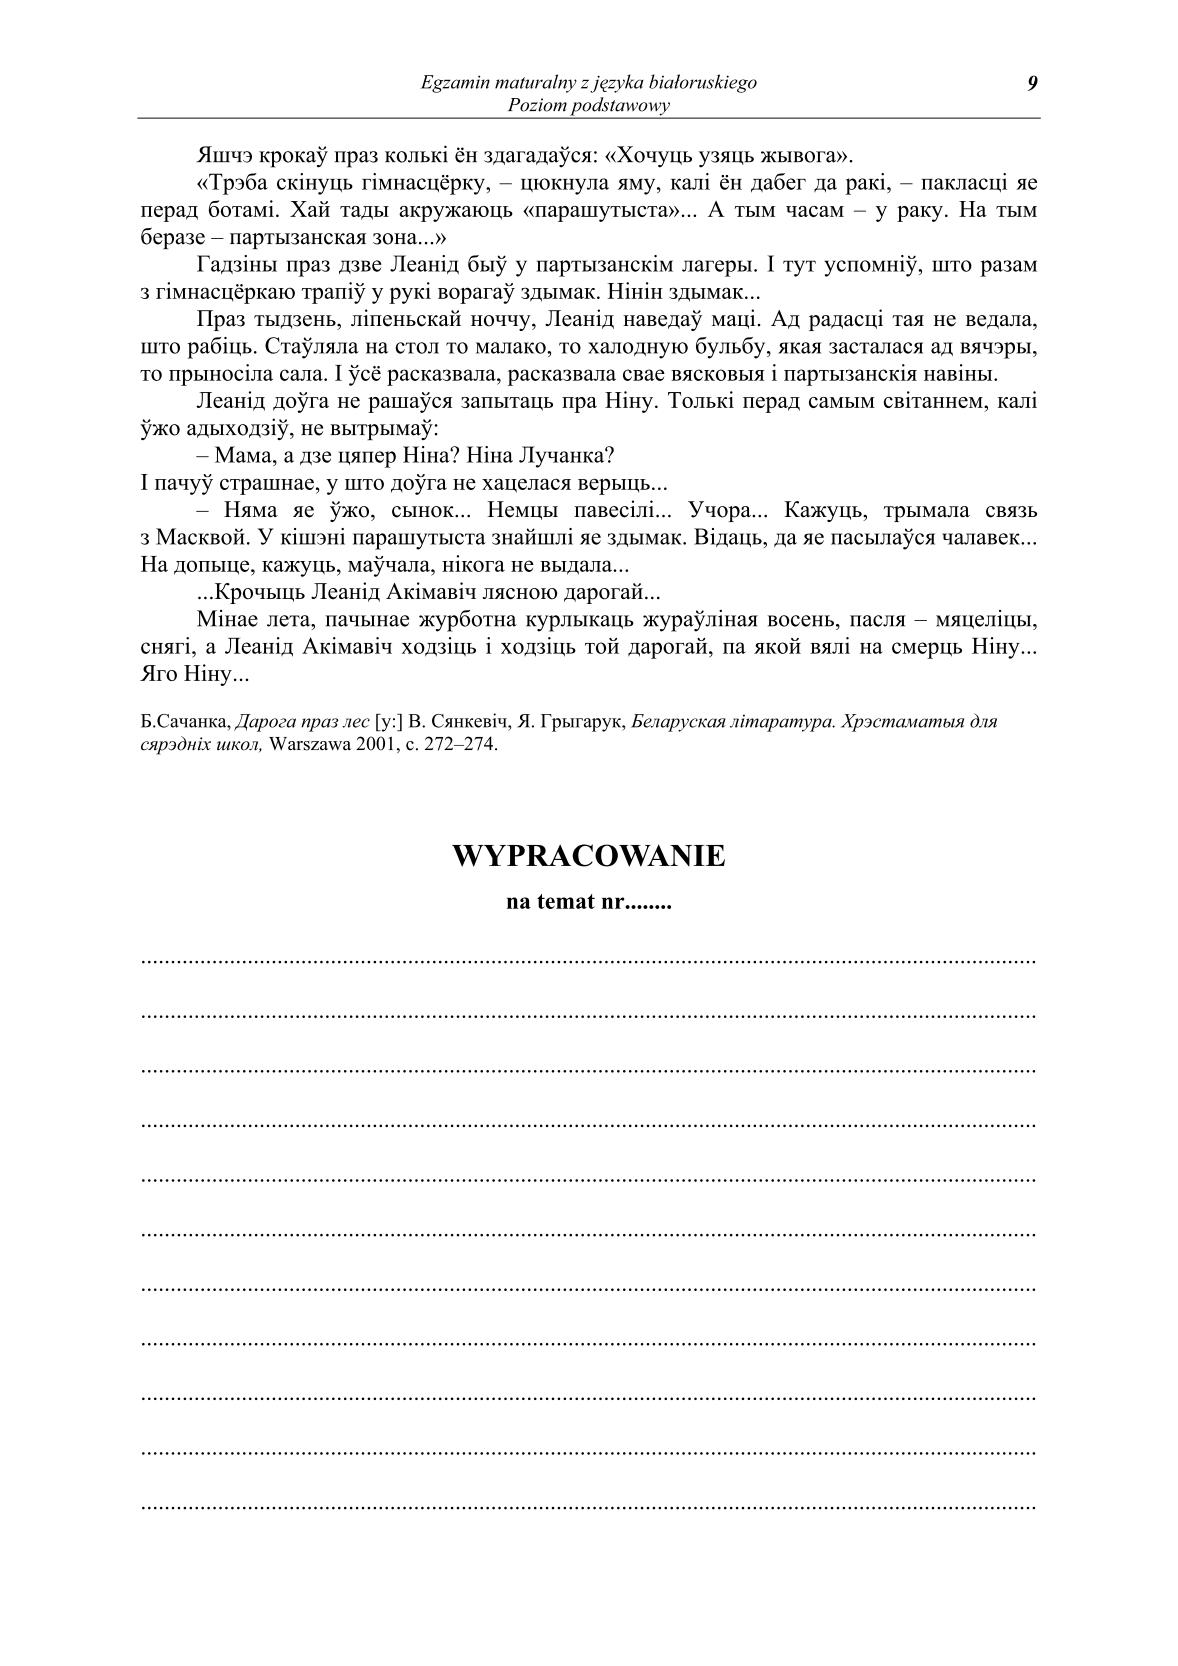 pytania-jezyk-bialoruski-poziom-podstawowy-matura-2014-str.9